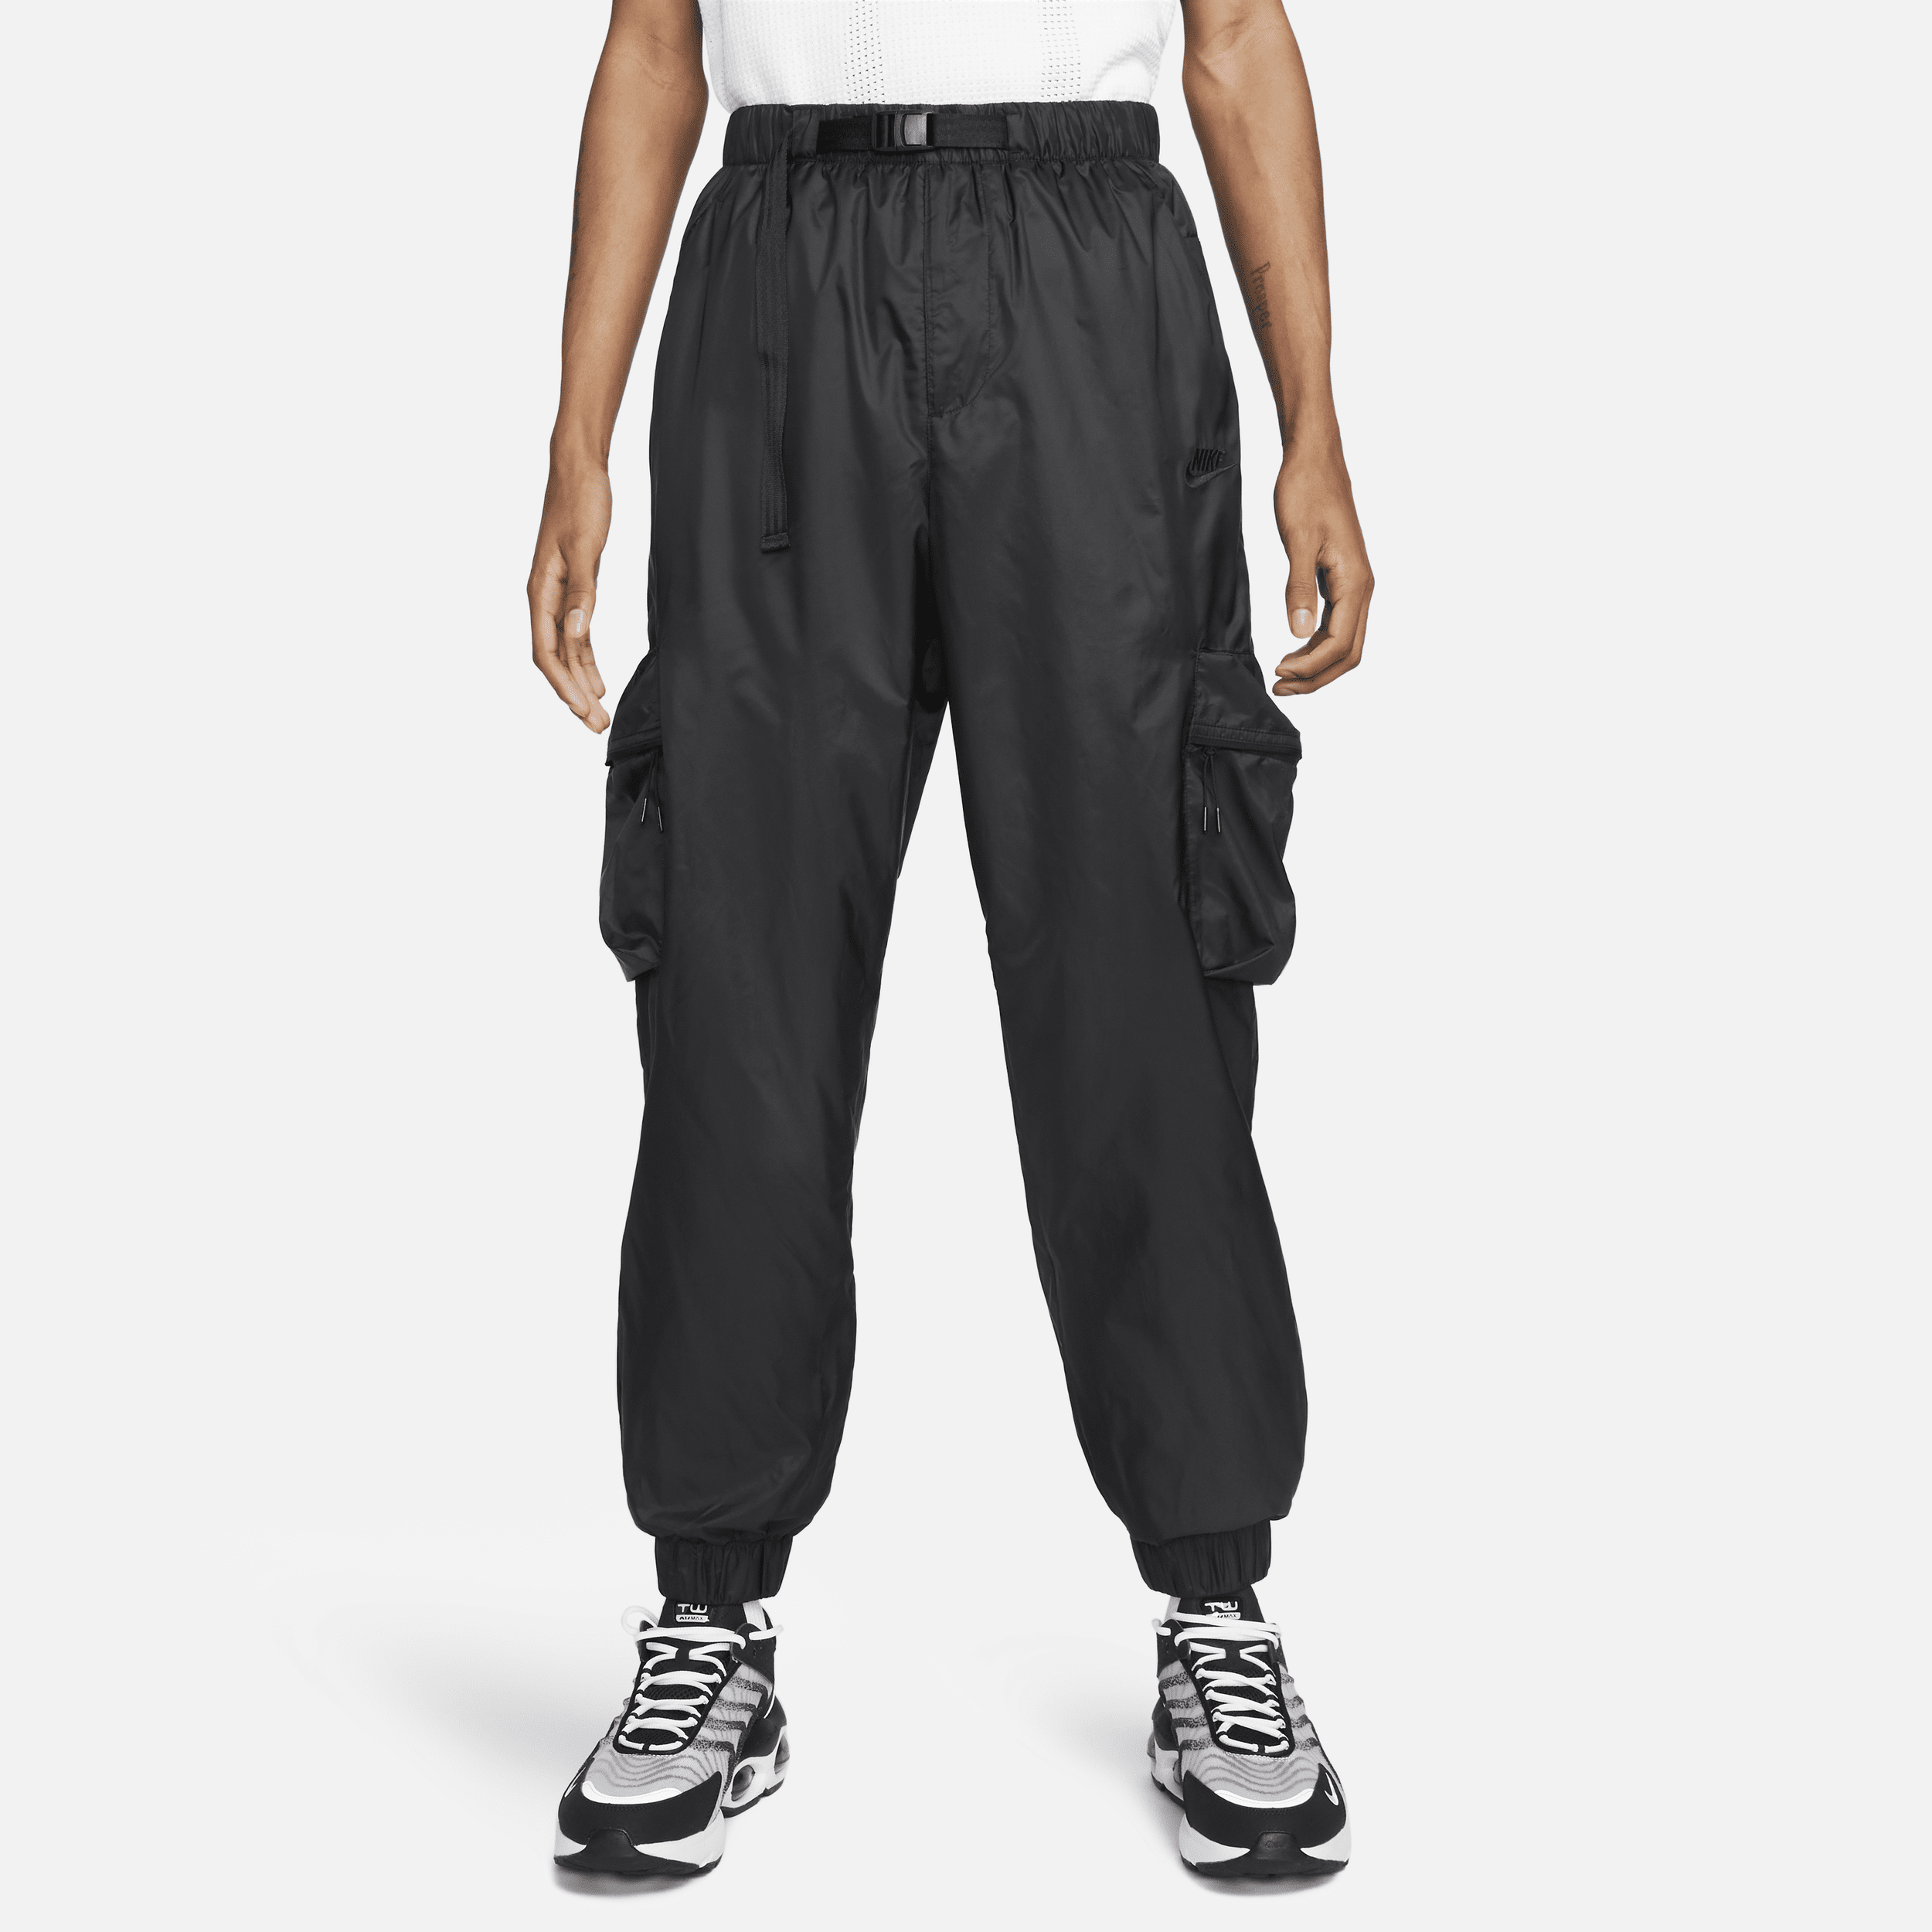 Pantaloni in tessuto con fodera Nike Tech – Uomo - Nero